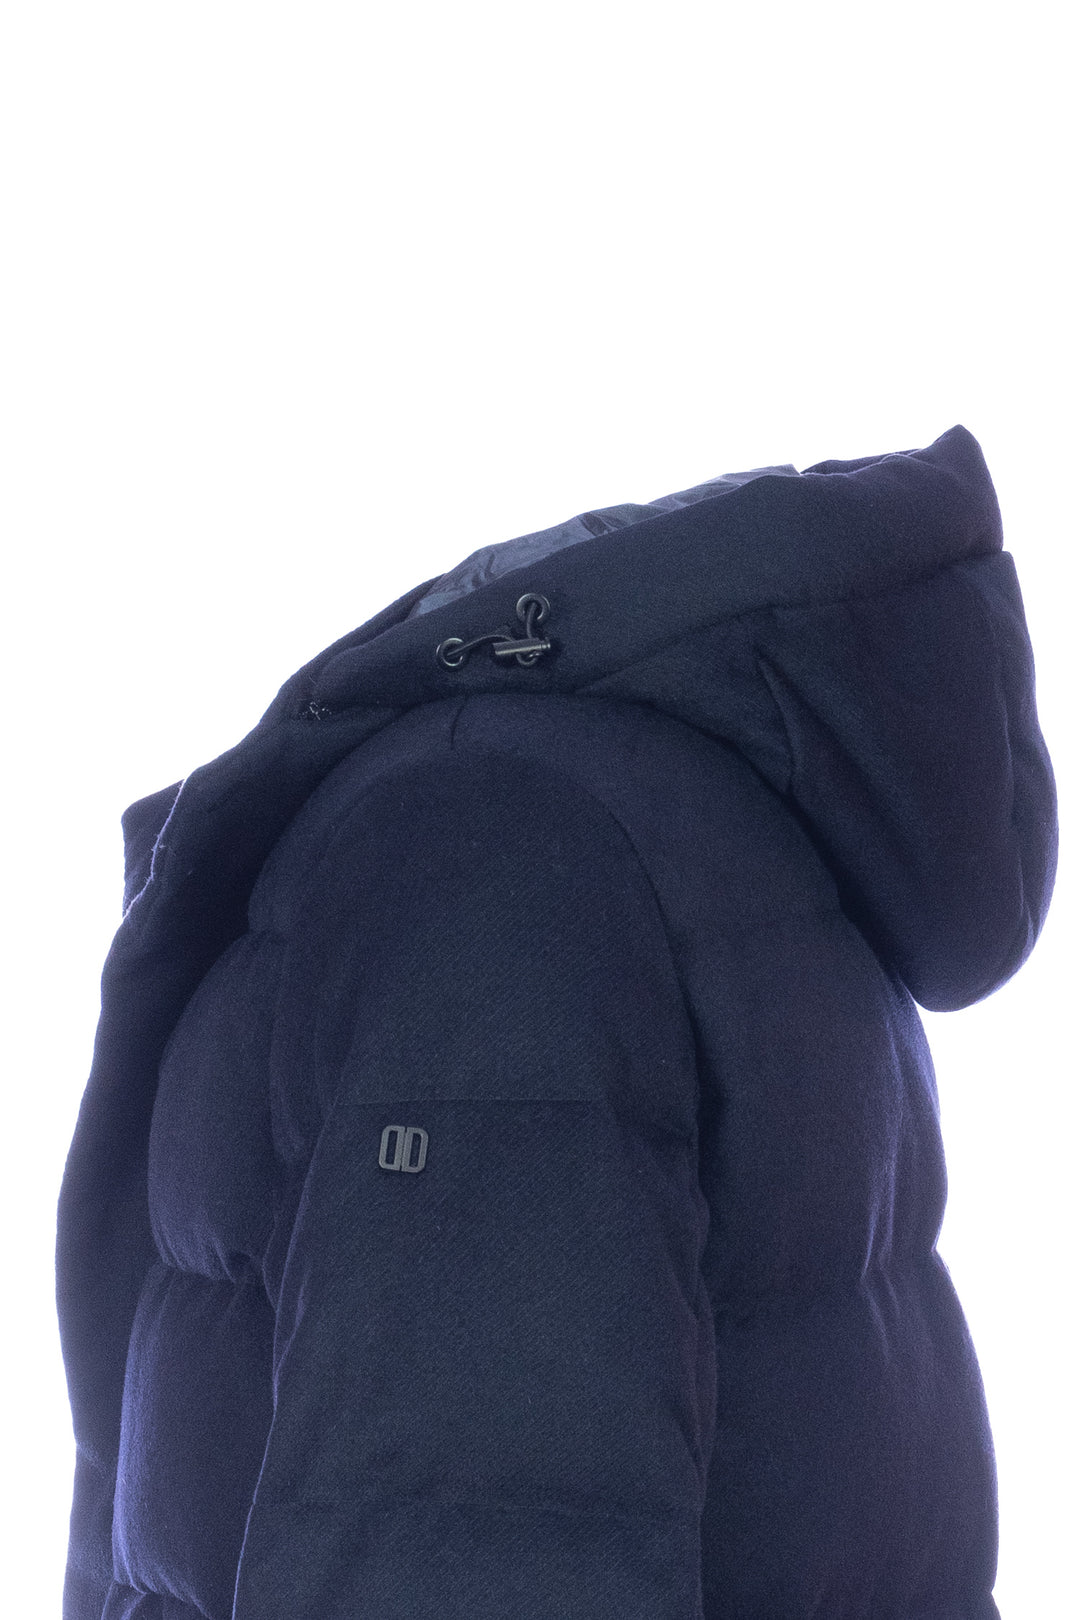 DUNO Piumino trapuntato blu scuro in lana tecnica con cappuccio rimovibile - Mancinelli 1954